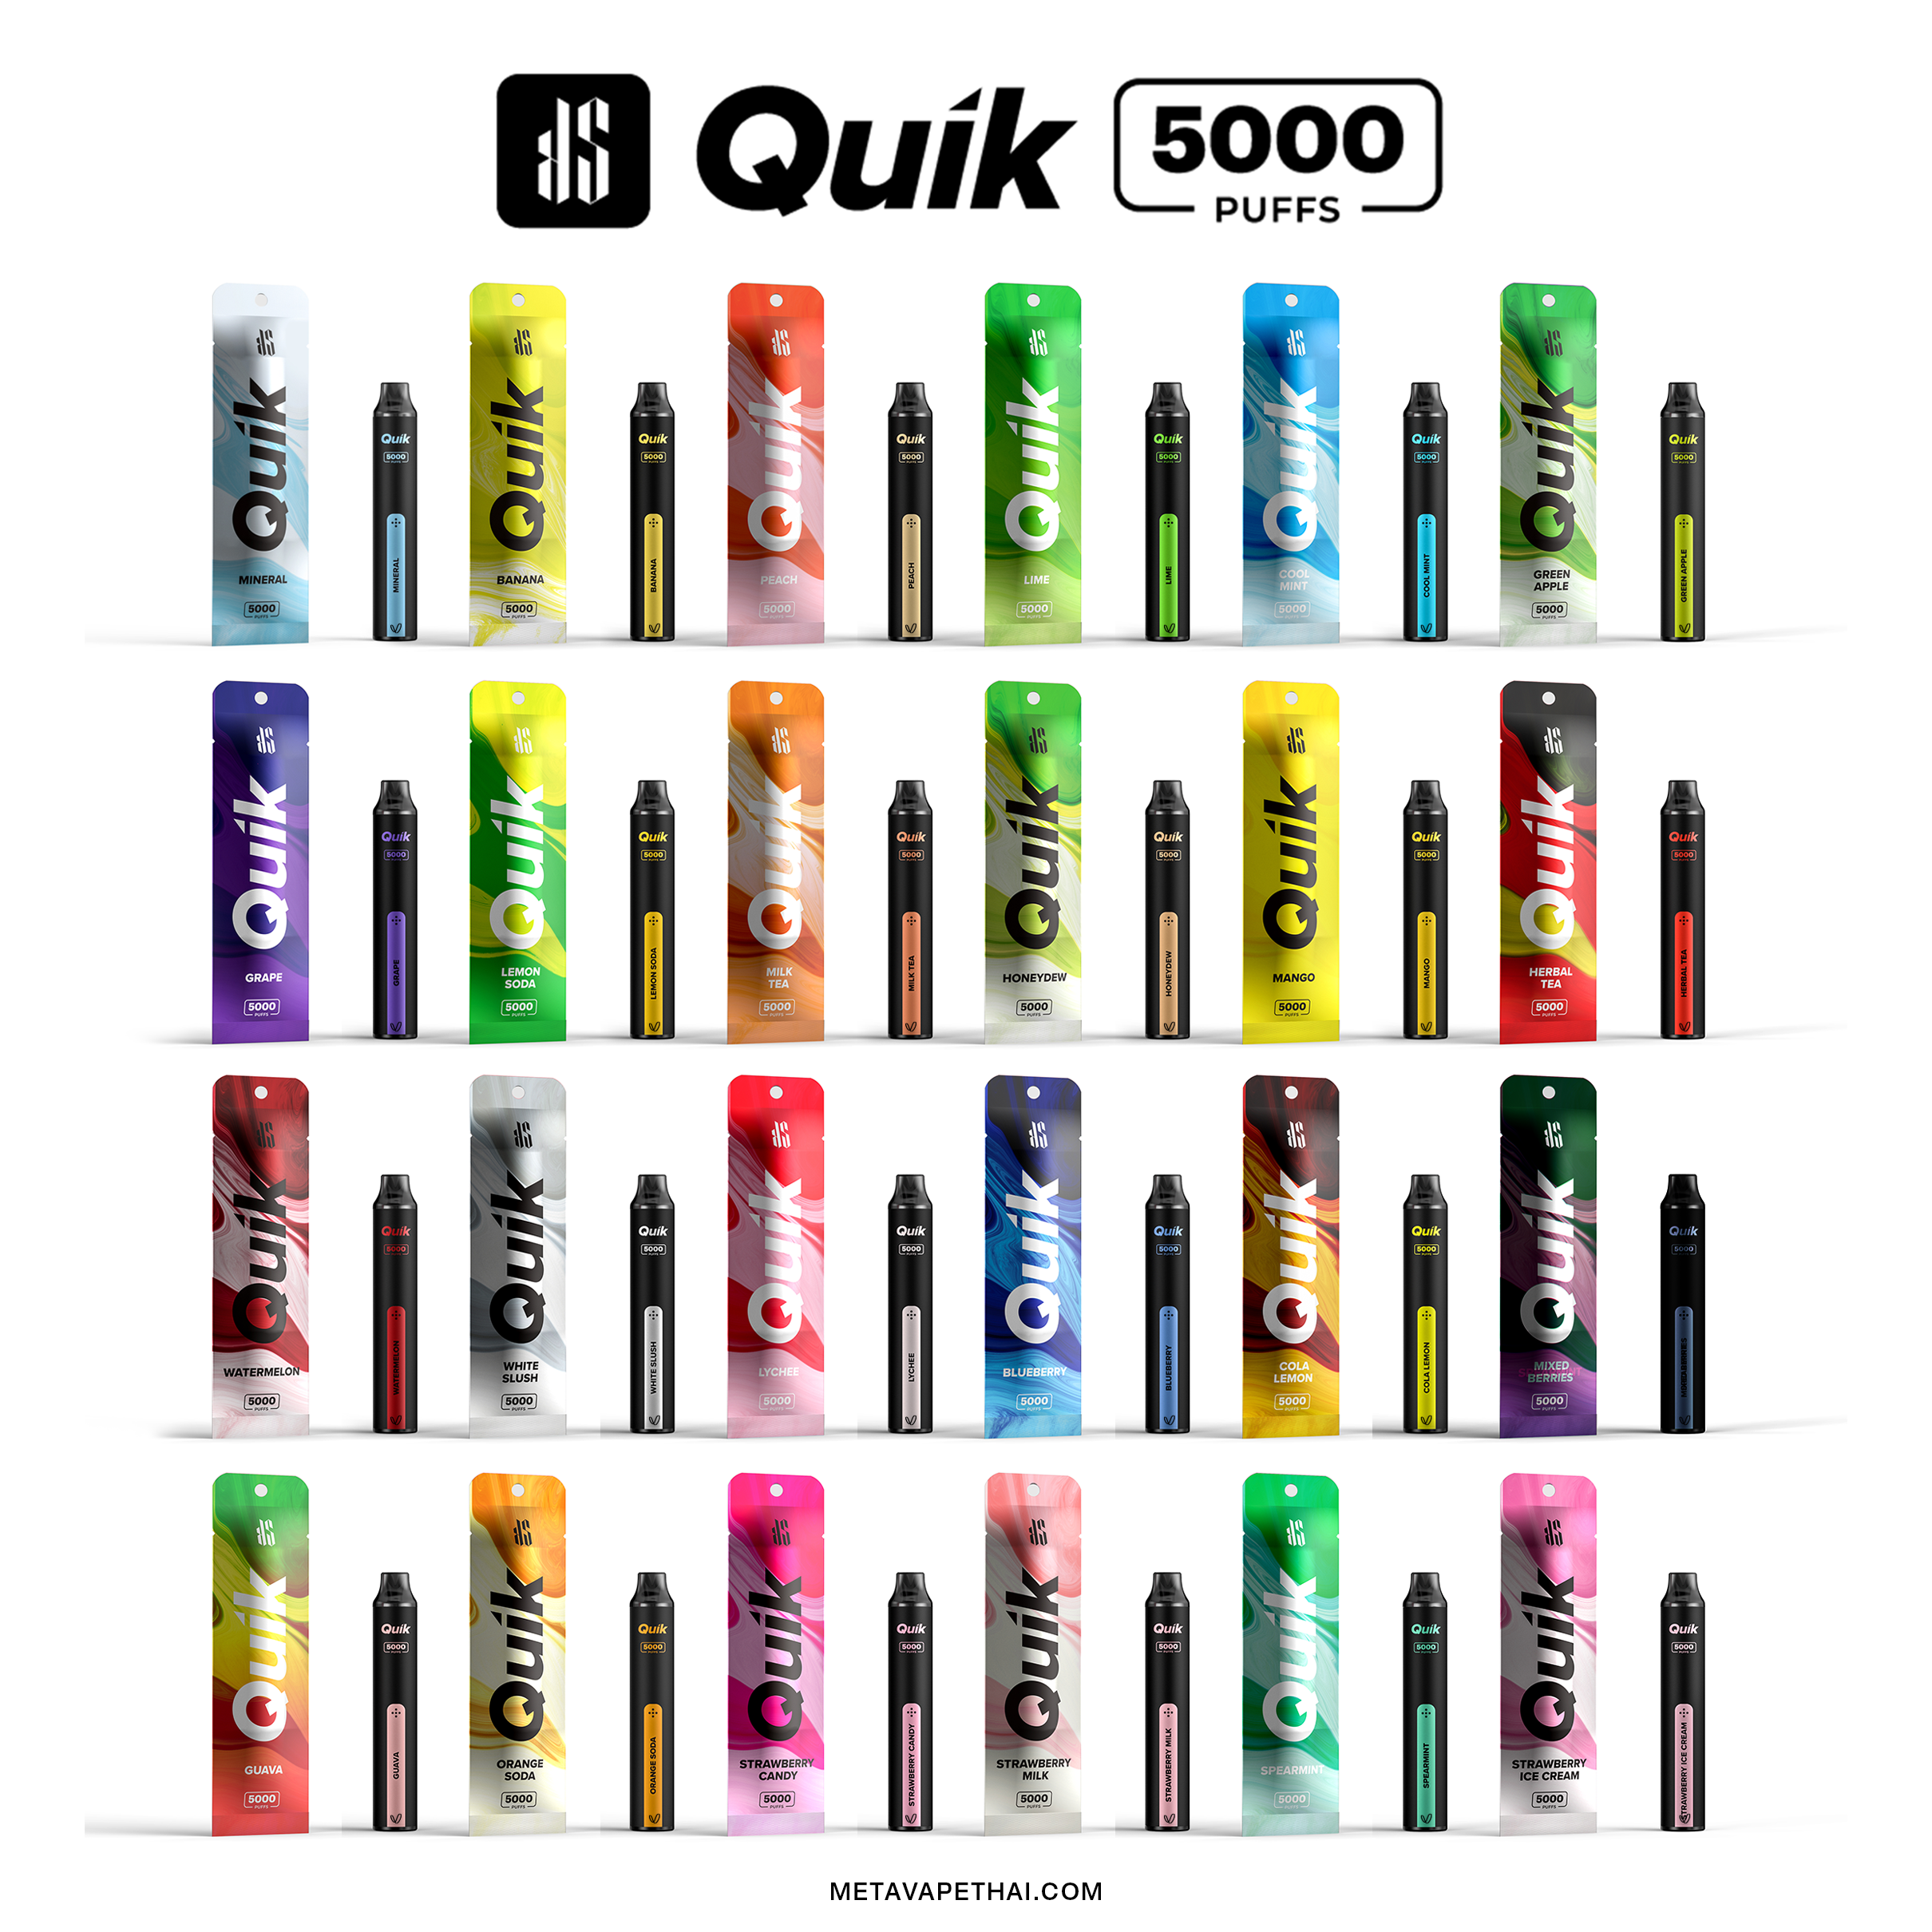 KS QUIK 5000 (5K)